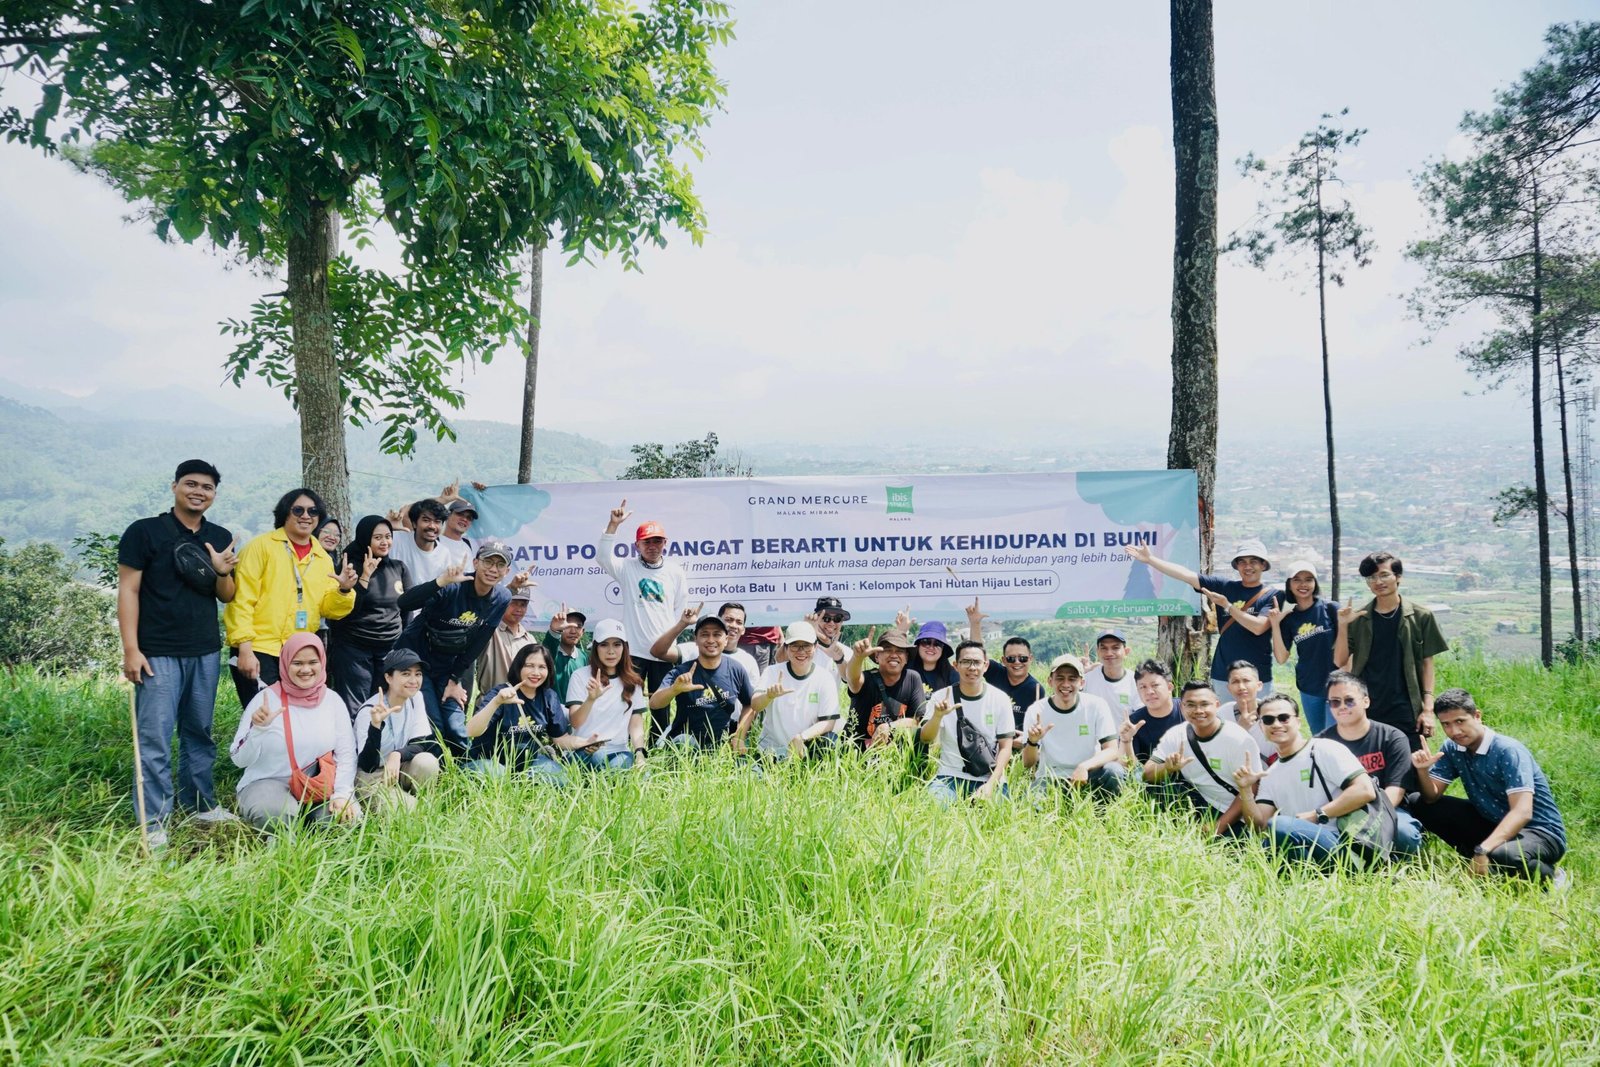 Accor Hotels Group Malang Raya Tanam 100 Pohon untuk Selamatkan Bumi